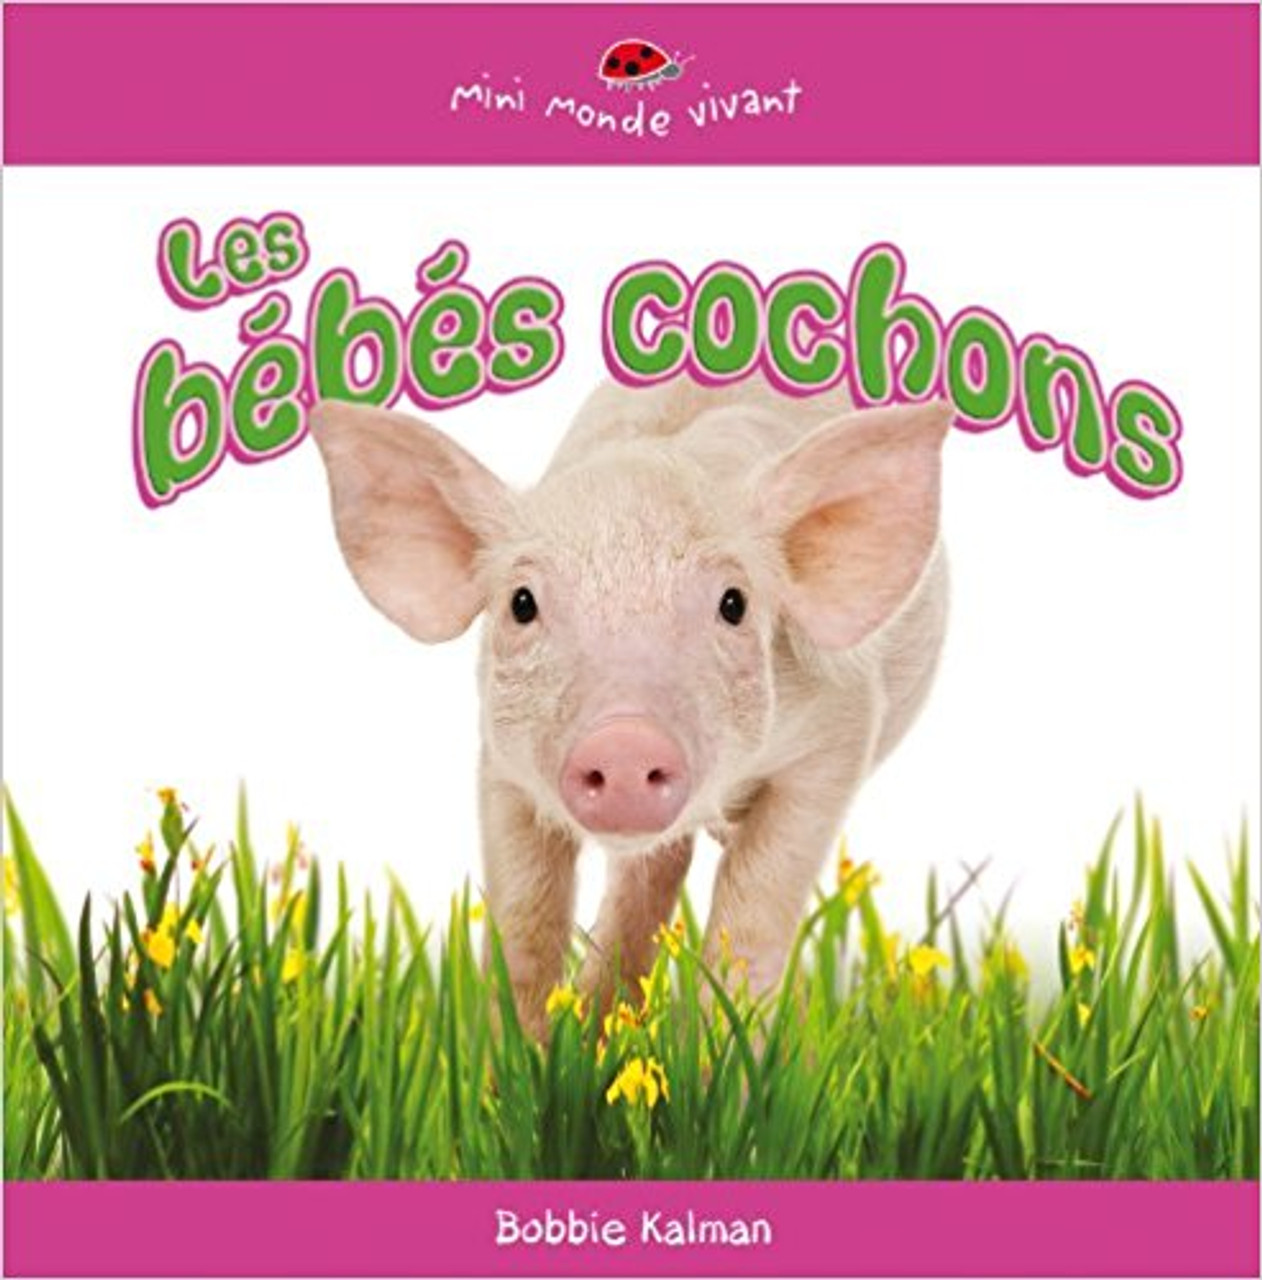 Les Bebes Cochons by Bobbie Kalman